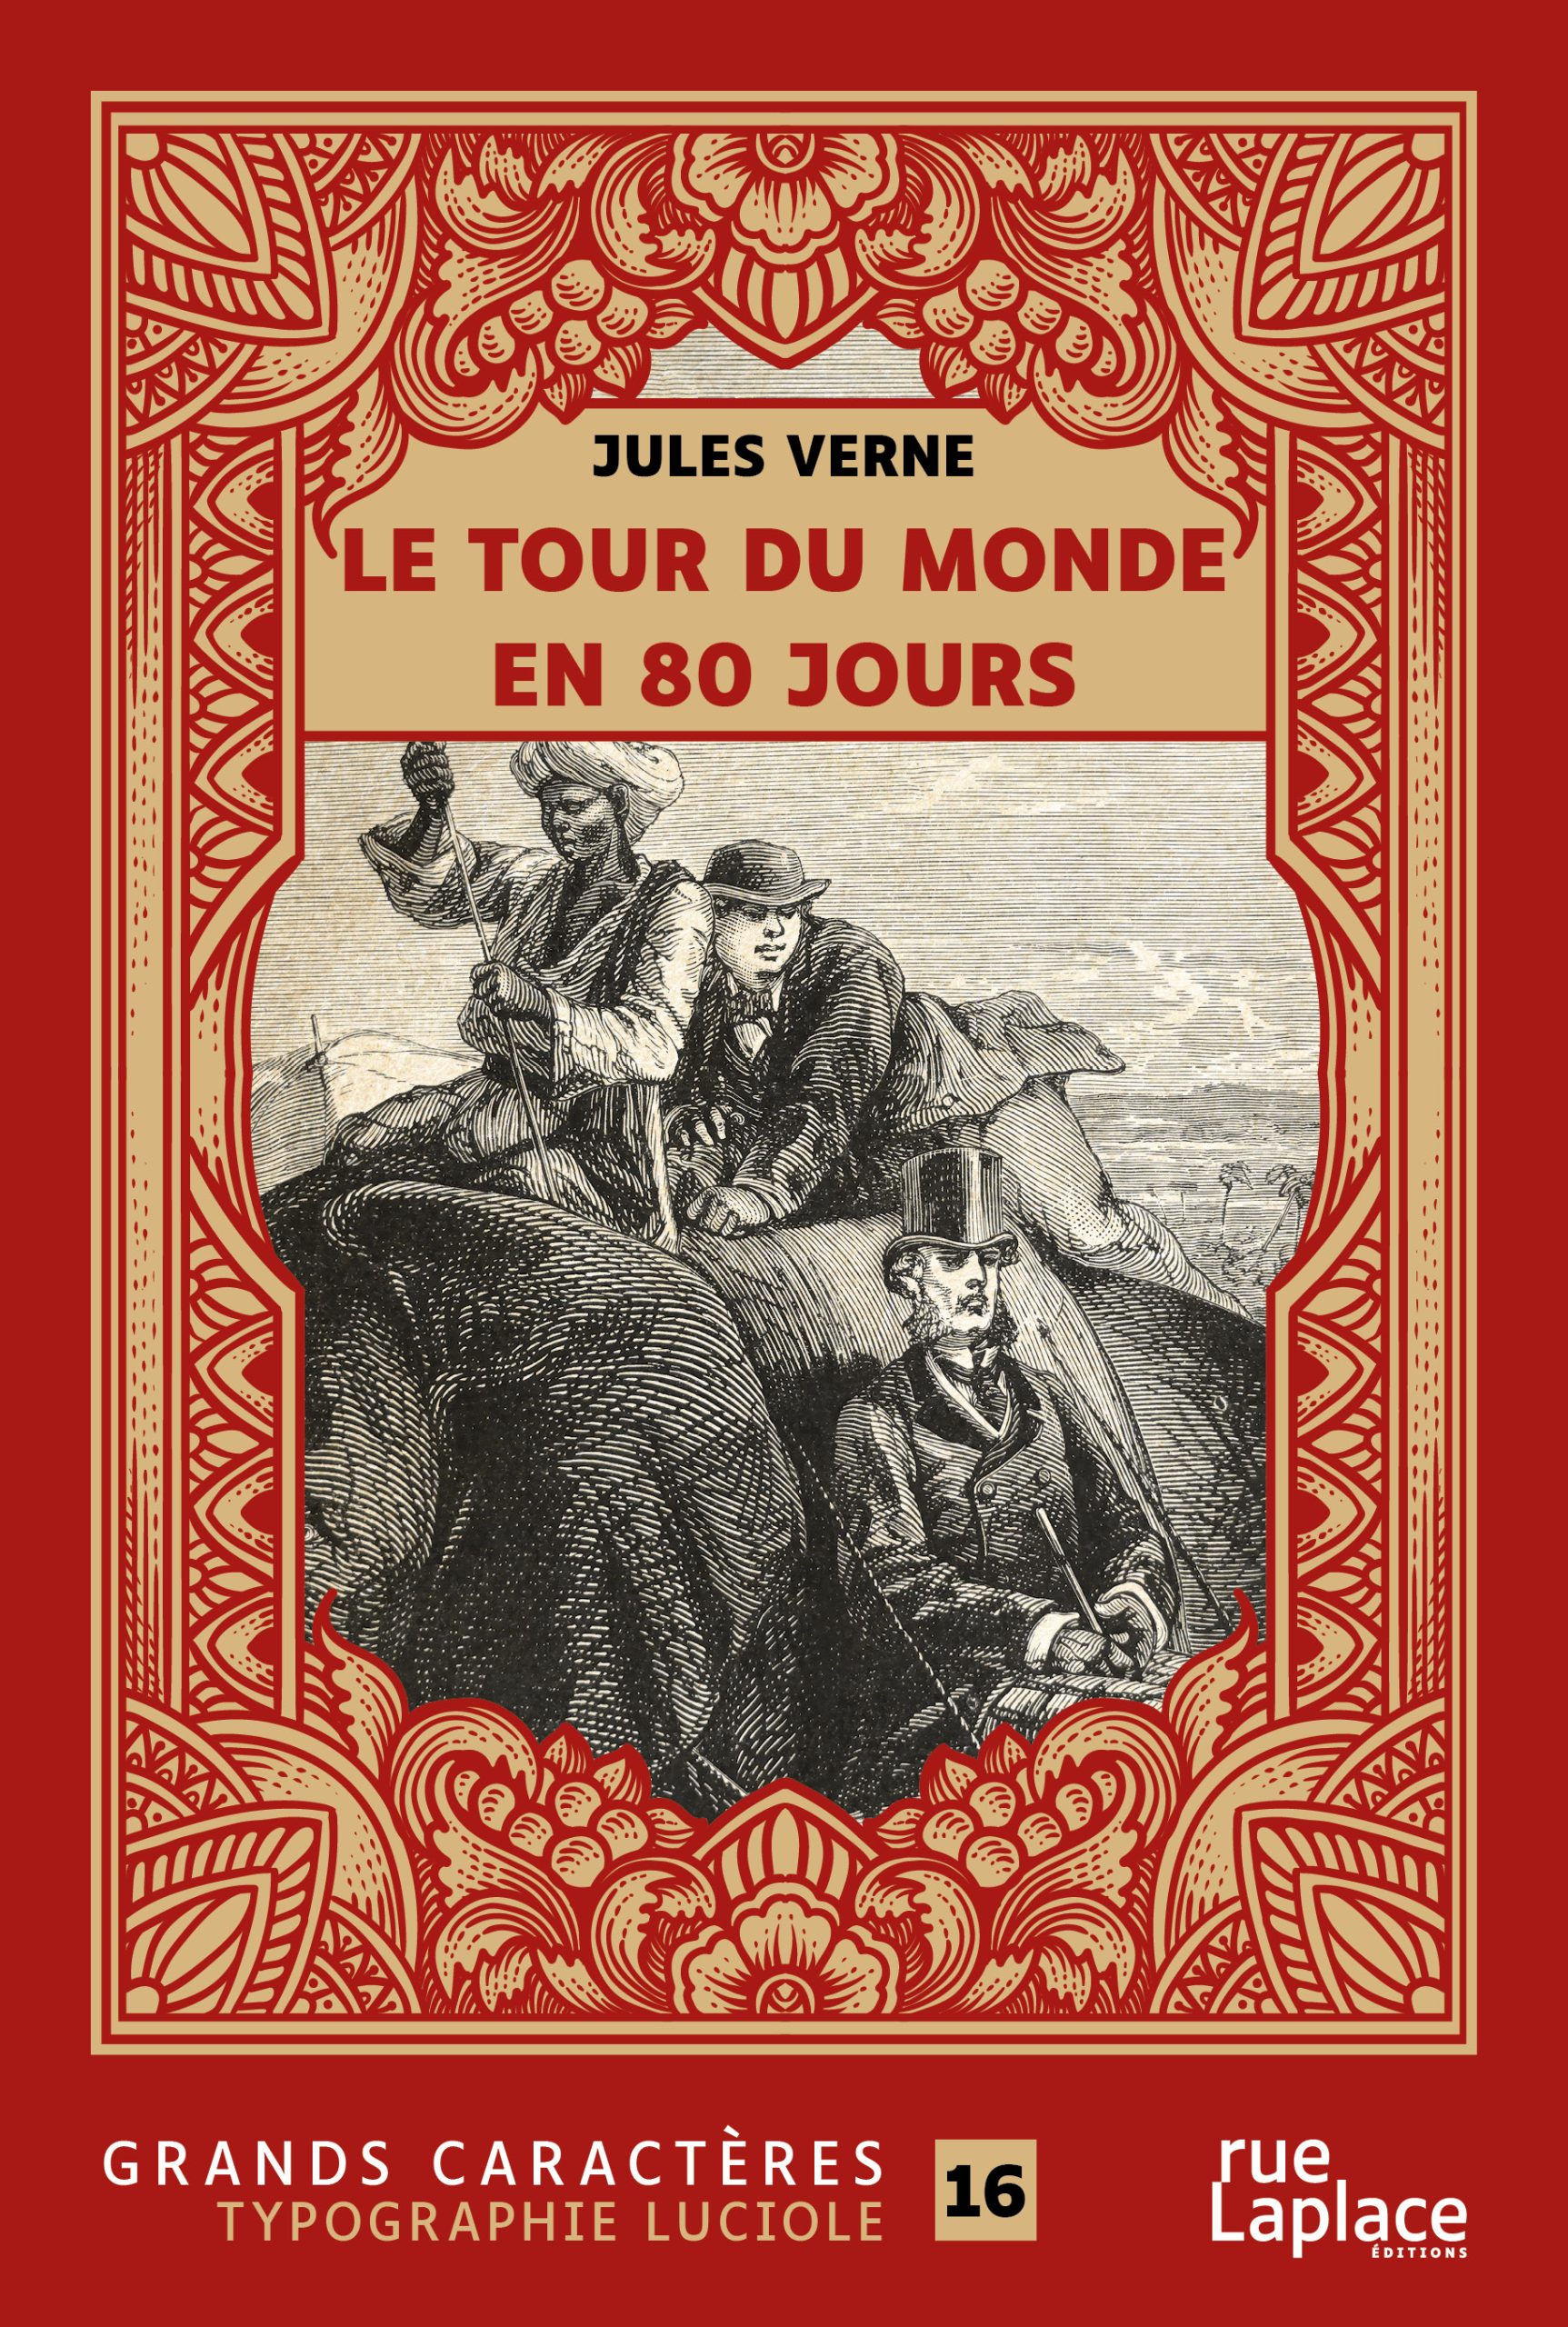 Couverture du livre en grands caractères - gros caractères - Le tour du monde en 80 jours de Jules Verne